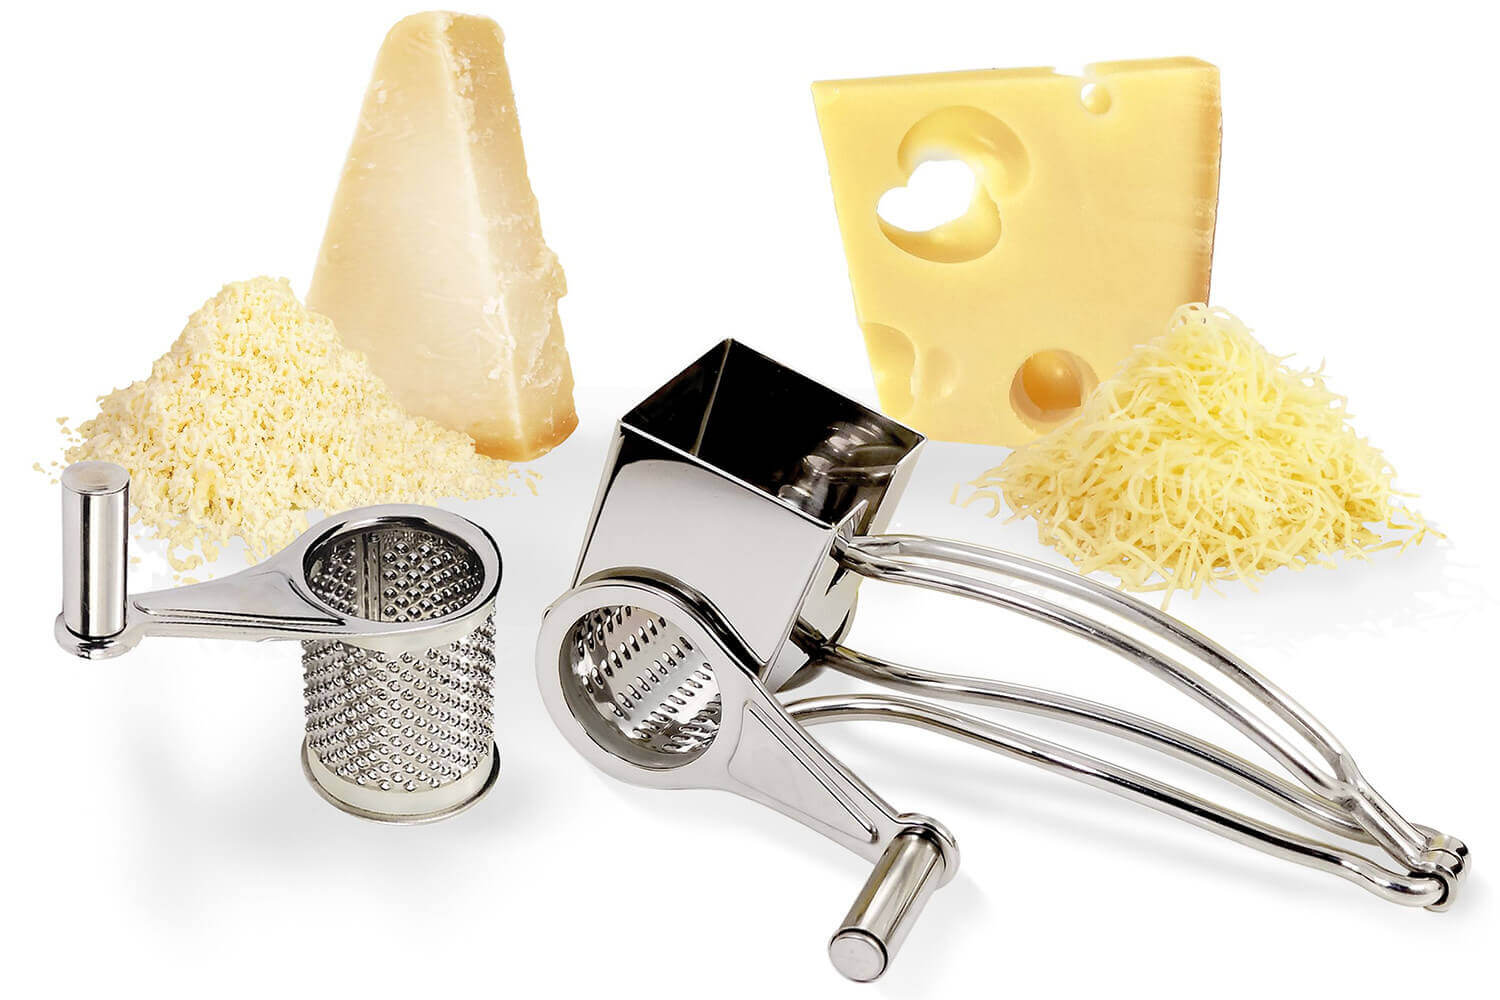 El Mazraa - Vous avez du fromage à râper? Enduisez la râpe